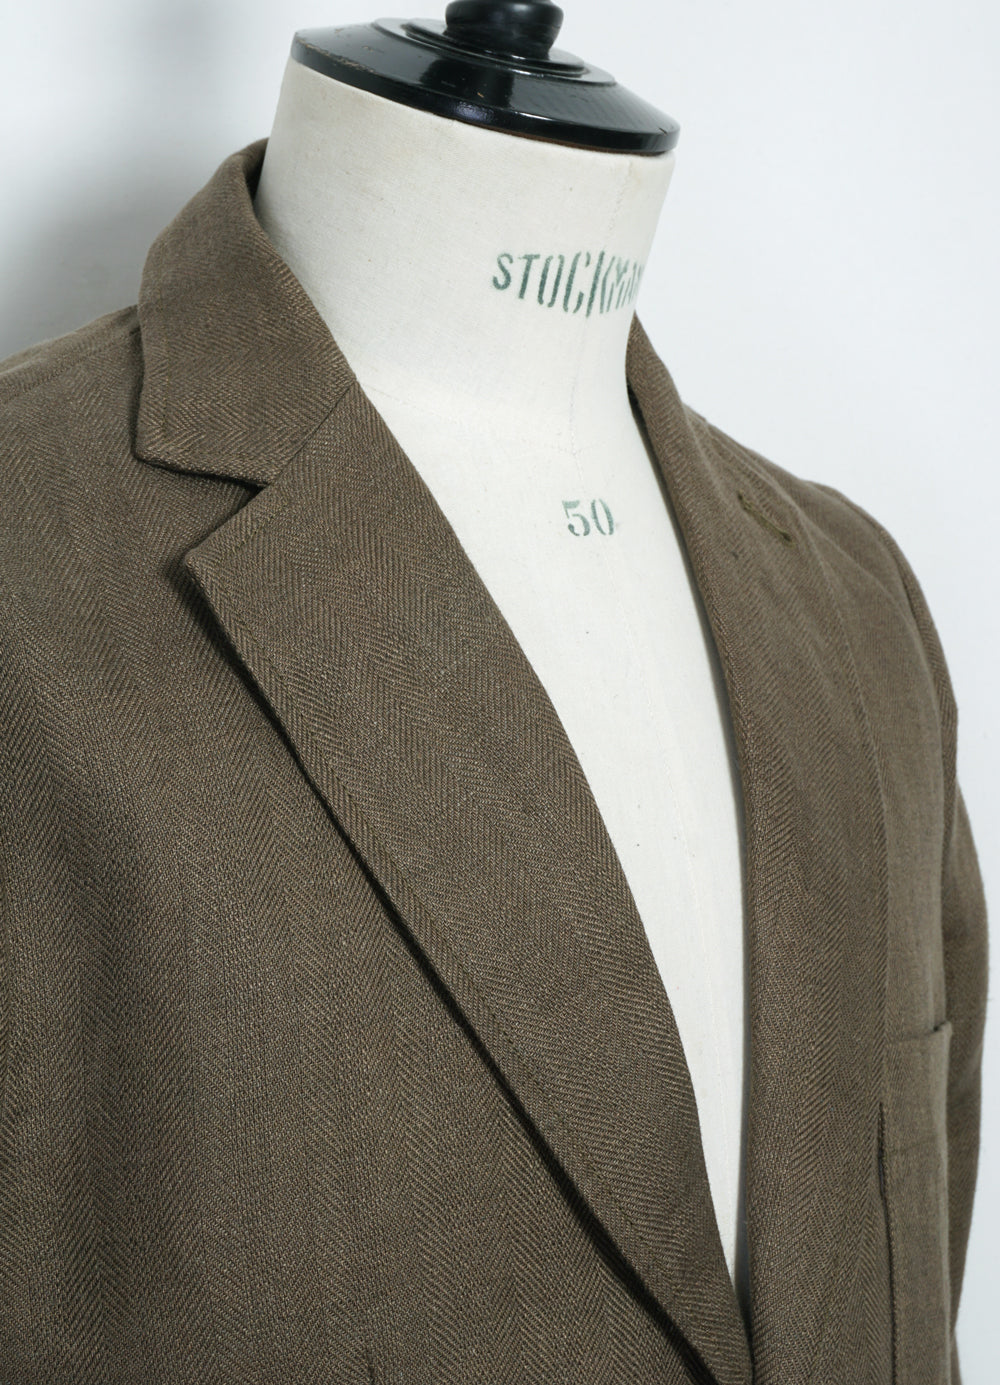 CHRIS | Classic Two Button Blazer | Khaki Linen